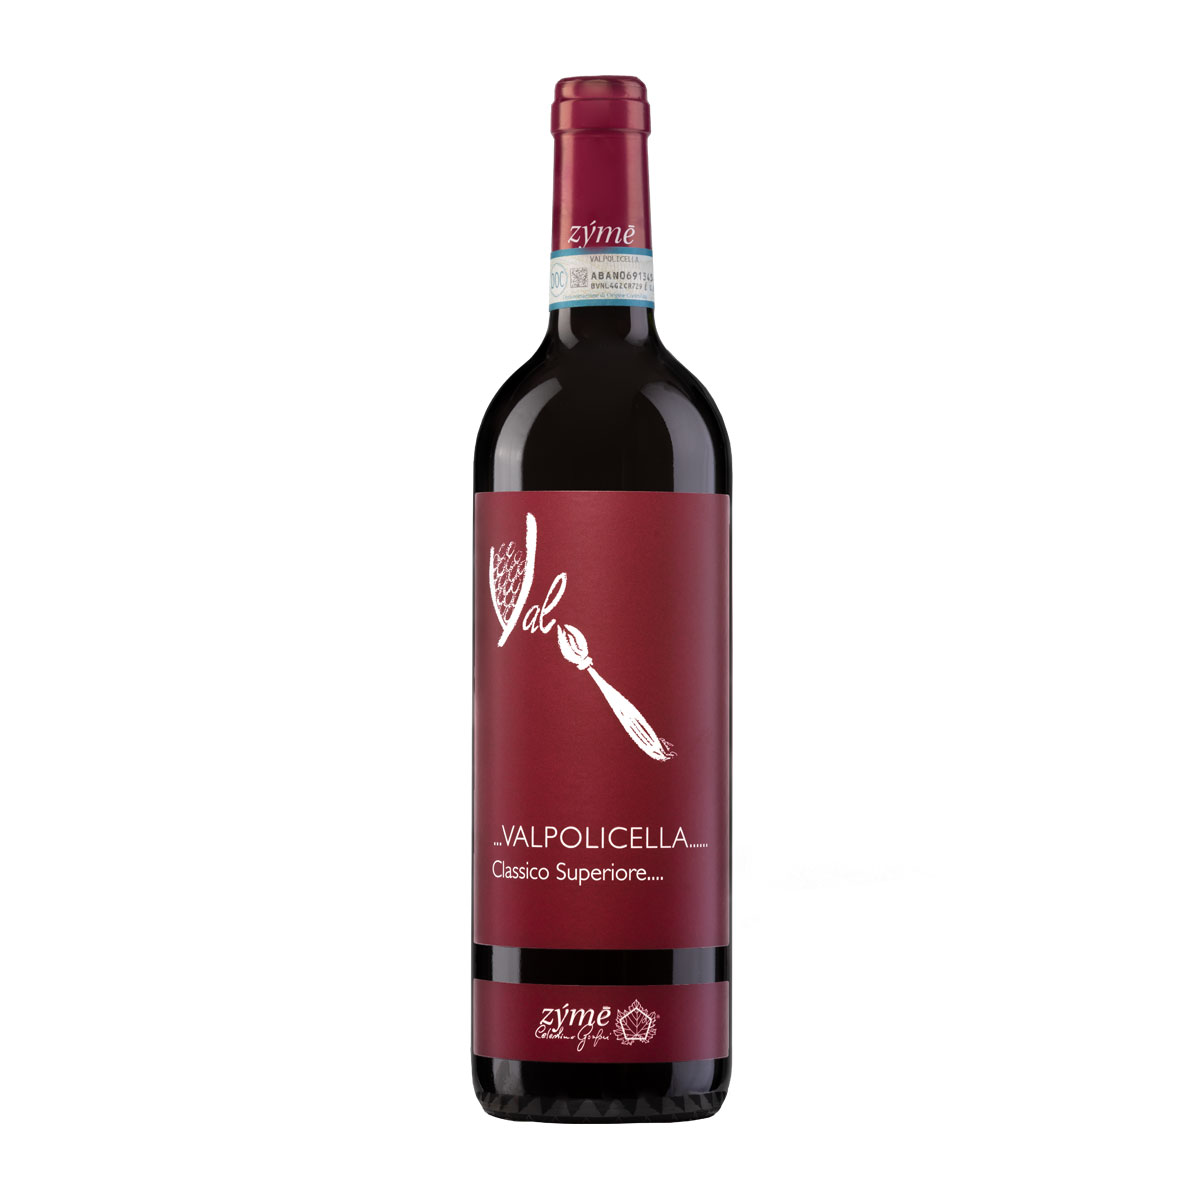 DOPヴァルポリチェッラ・クラッシコ・スペリオーレ2017/蔵直空輸ワイン